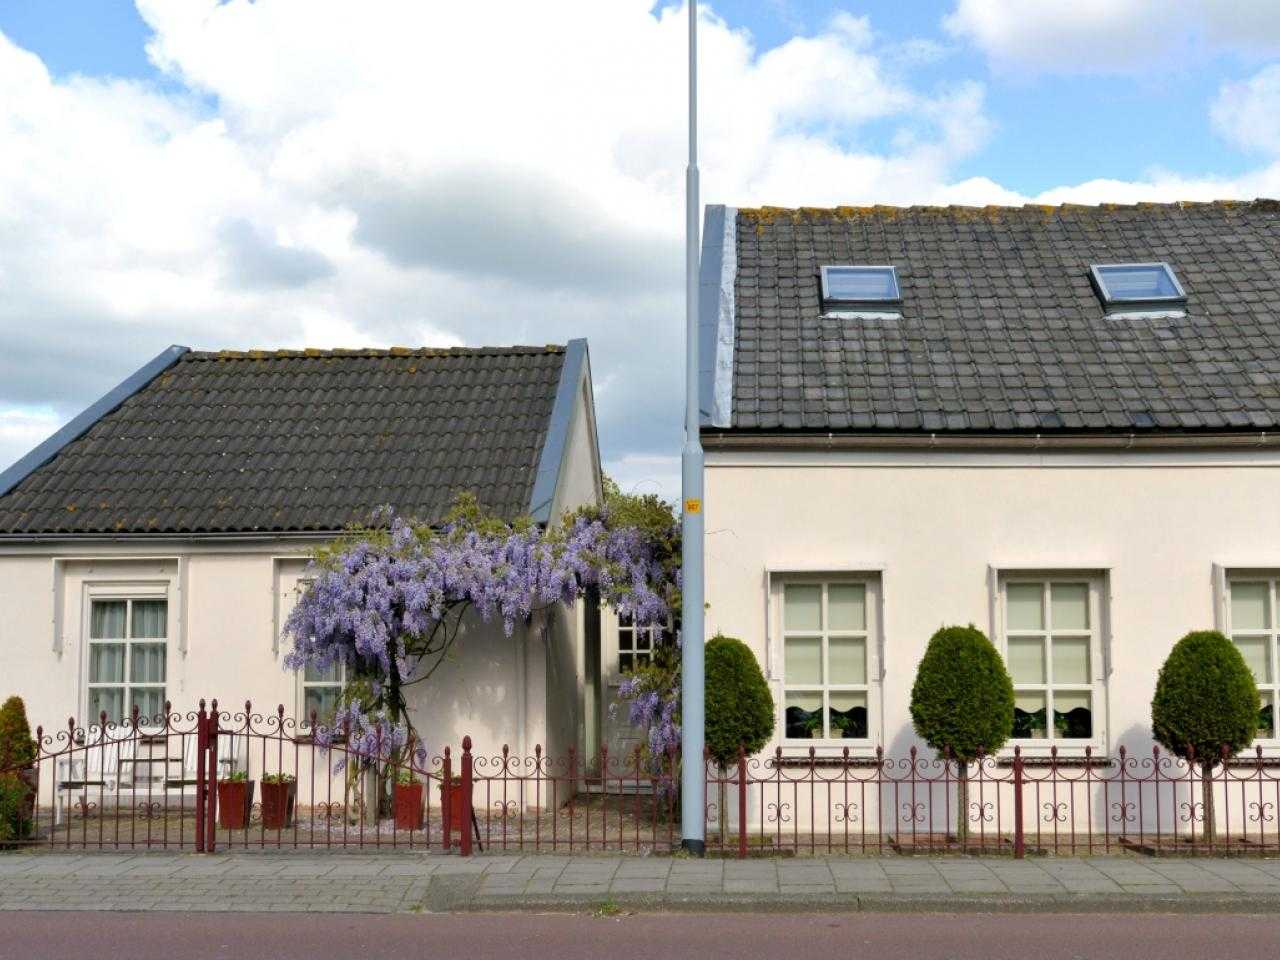 Picturesque house in Nieuwbrug on the Ringdijk.